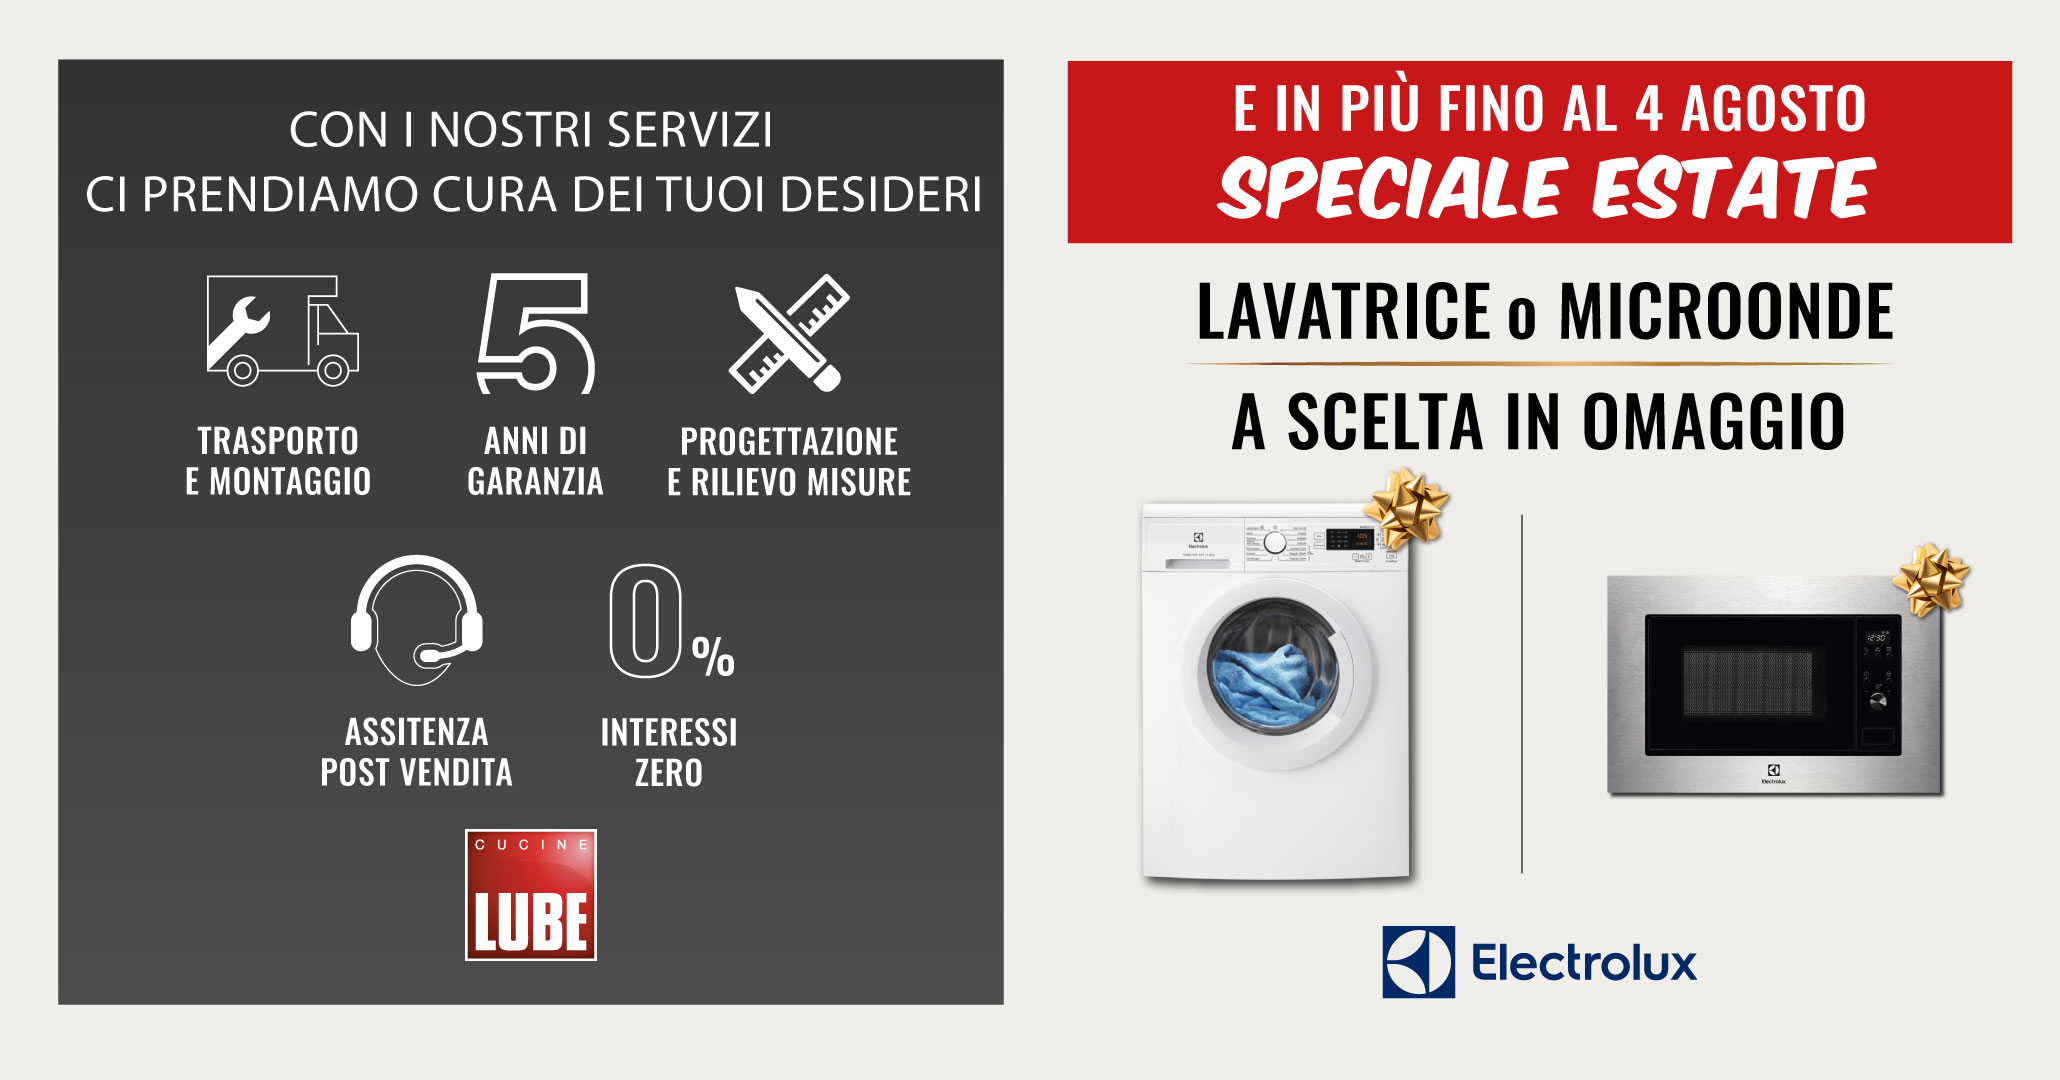 Nuova promozione sui modelli Cucine LUBE, in regalo la lavatrice o il microonde di Electrolux. Hai tempo fino al 04 agosto! - LUBE CREO Store Guidonia (Roma)